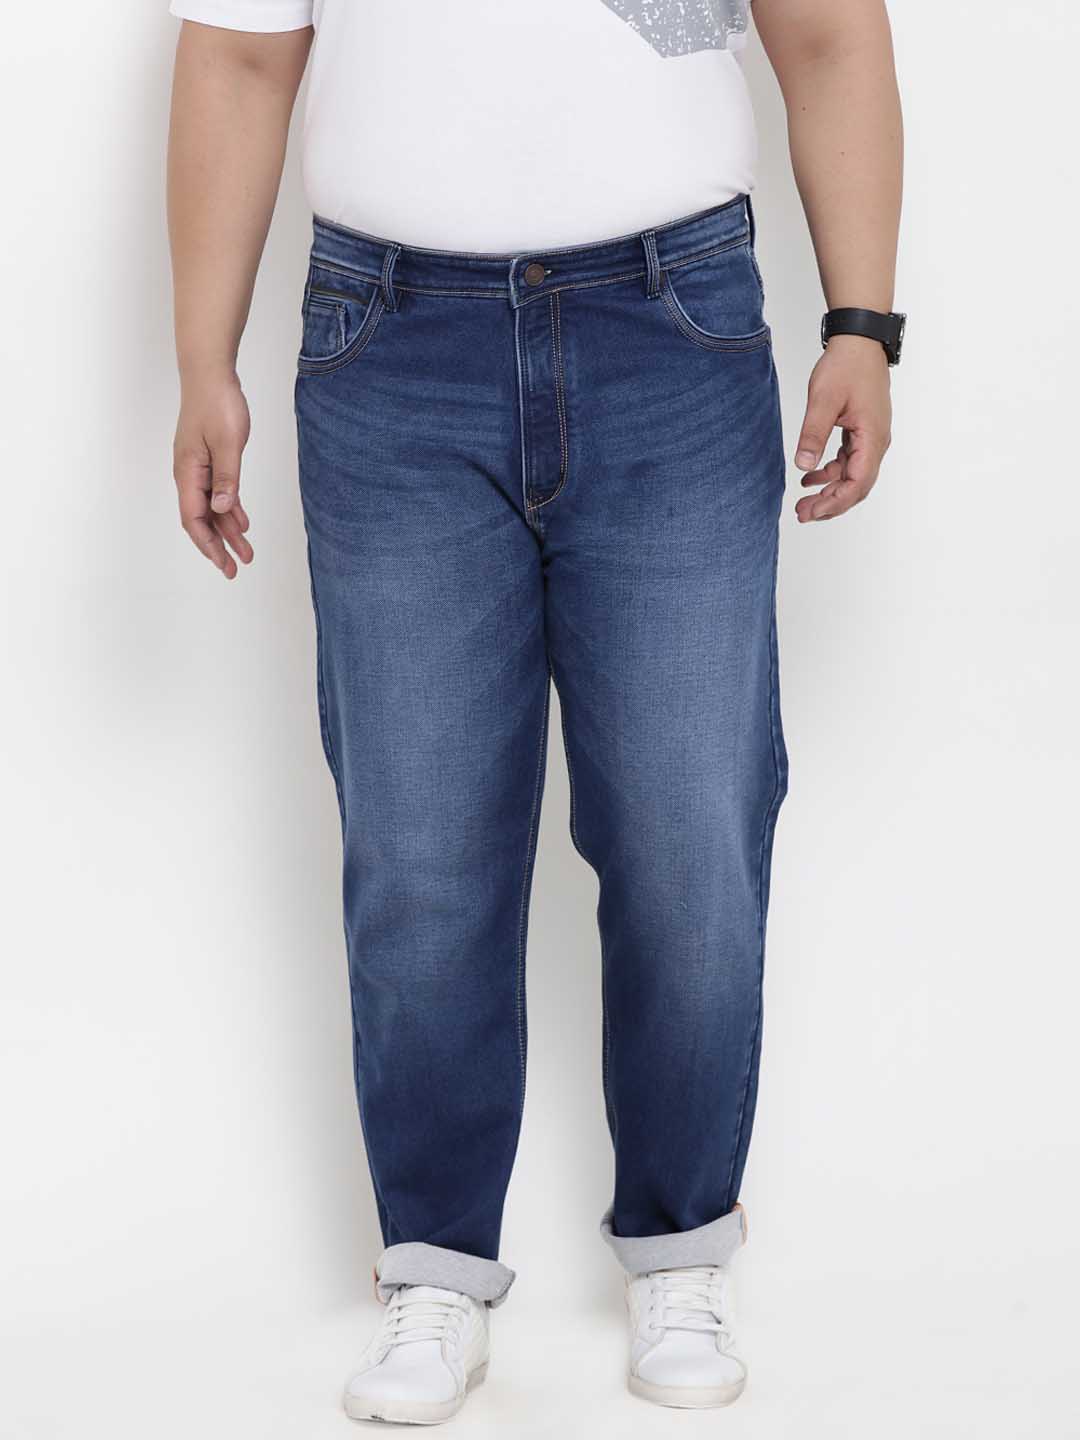 bottomwear/jeans/BEPLJPJ1188/bepljpj1188-1.jpg